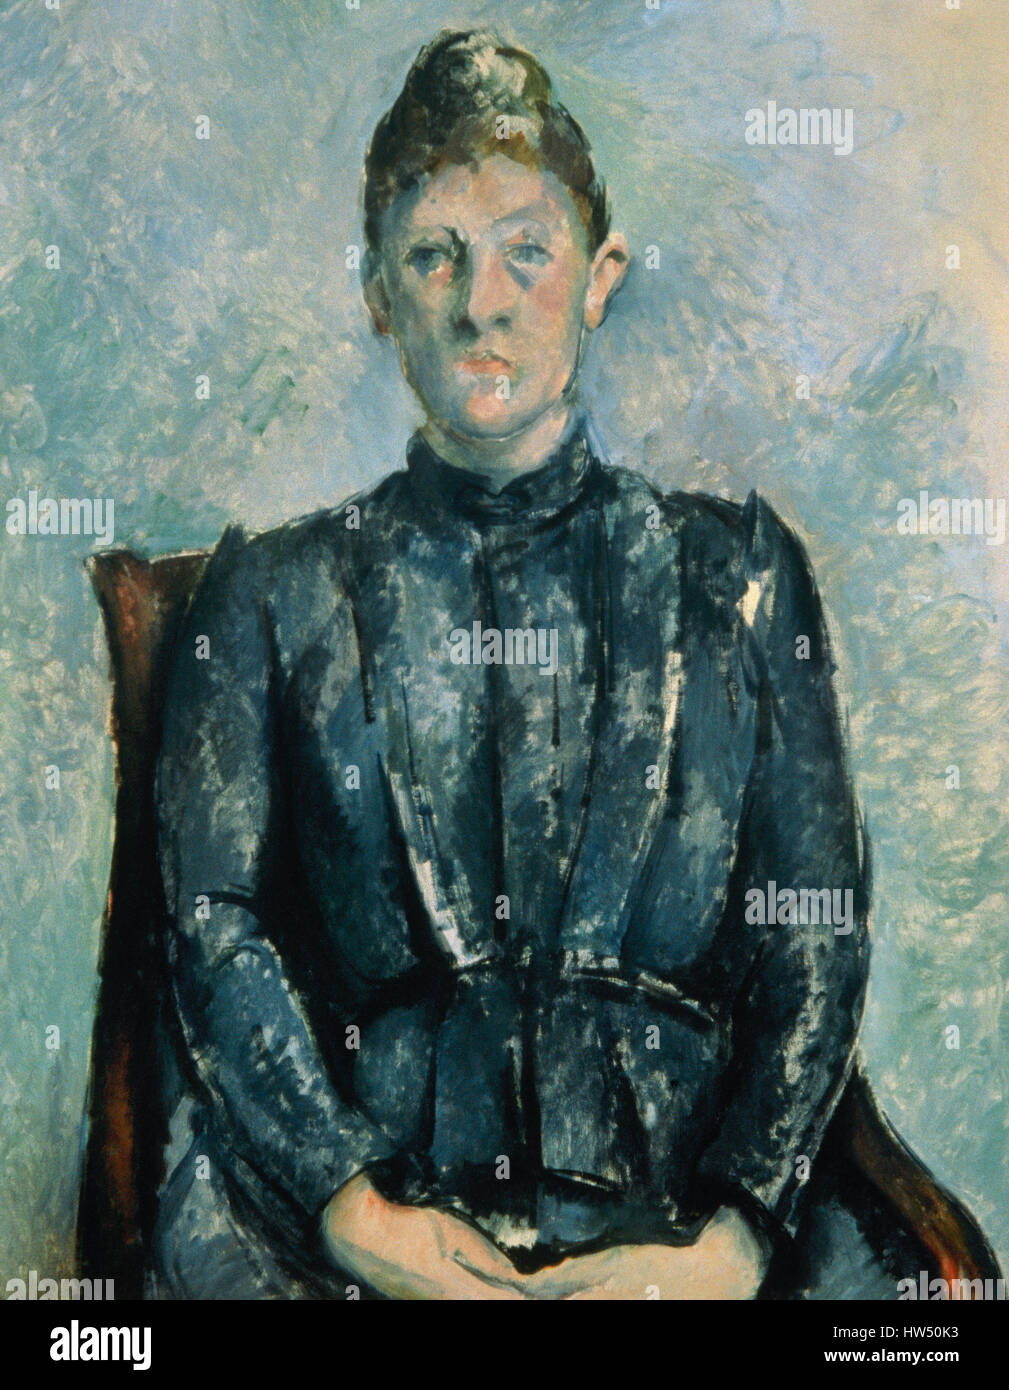 Paul Cézanne (1839-1906). Französischer Maler. Post-Impressionisten. Madame Cézanne im Gewächshaus, 1890-1892. Öl auf Leinwand. Orangerie-Museum. Paris. Frankreich. Stockfoto